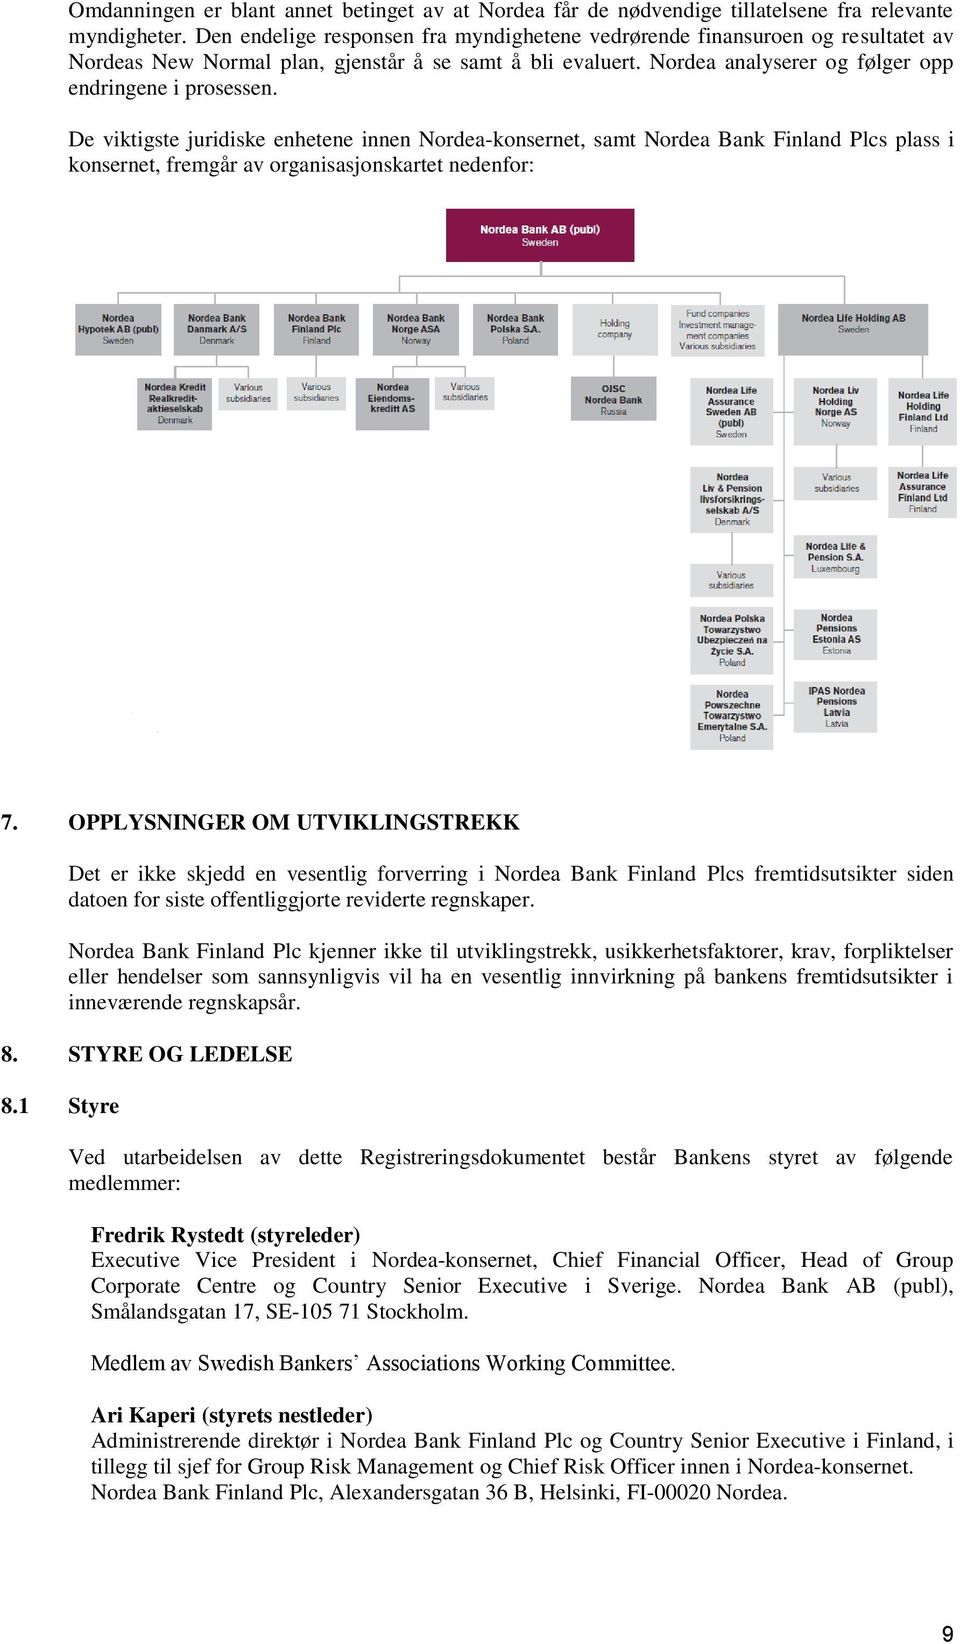 De viktigste juridiske enhetene innen Nordea-konsernet, samt Nordea Bank Finland Plcs plass i konsernet, fremgår av organisasjonskartet nedenfor: 7.